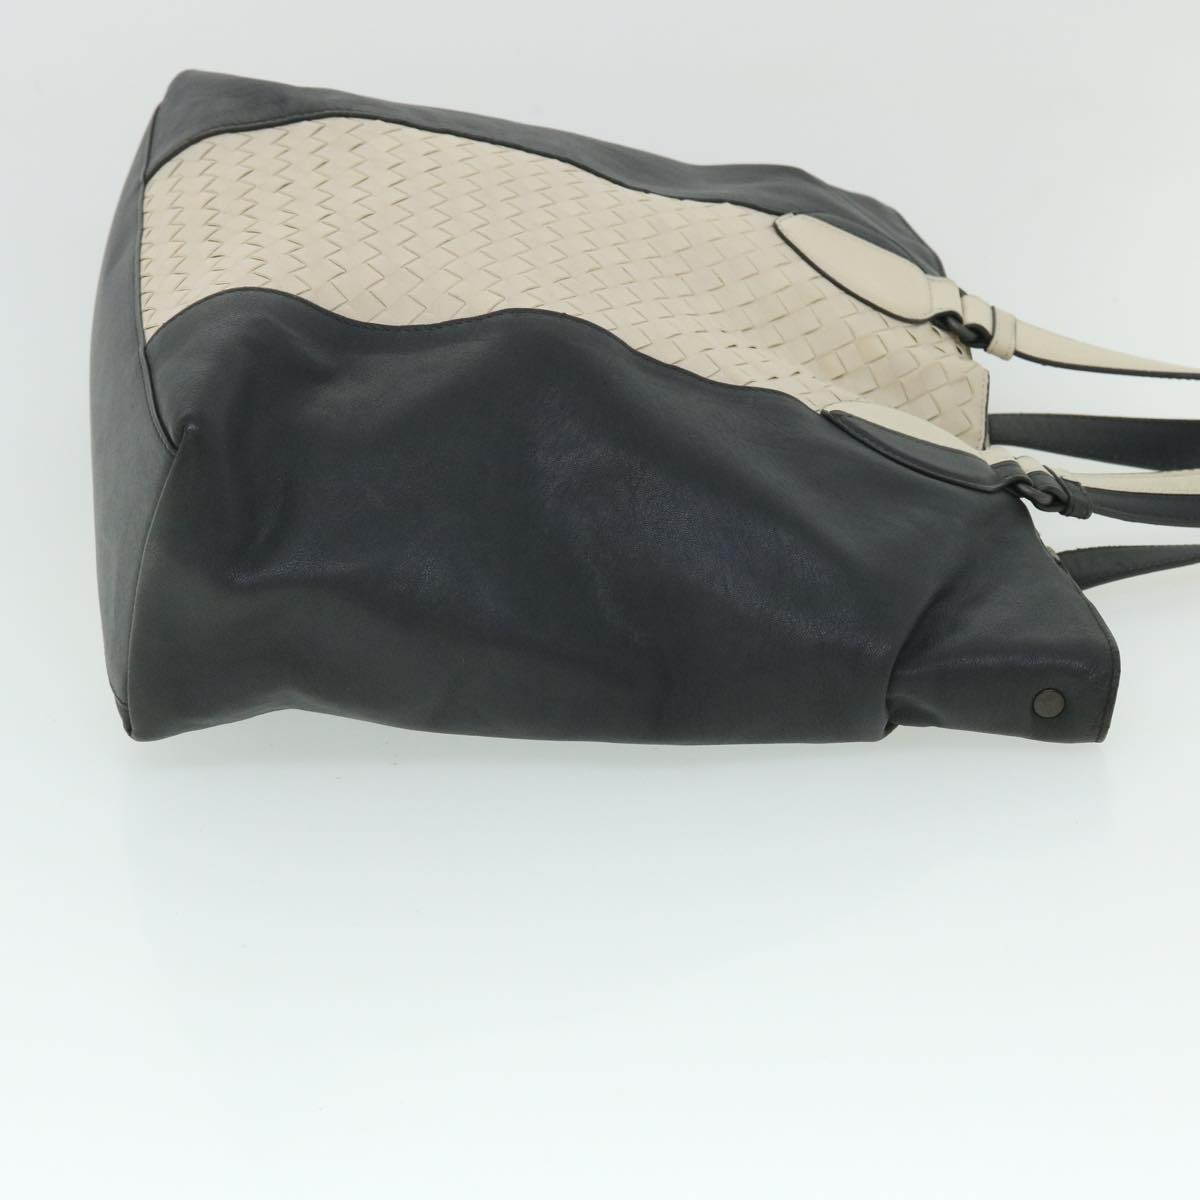 BOTTEGA VENETA INTRECCIATO Tote Bag Leather 2way White Gray Auth bs8218